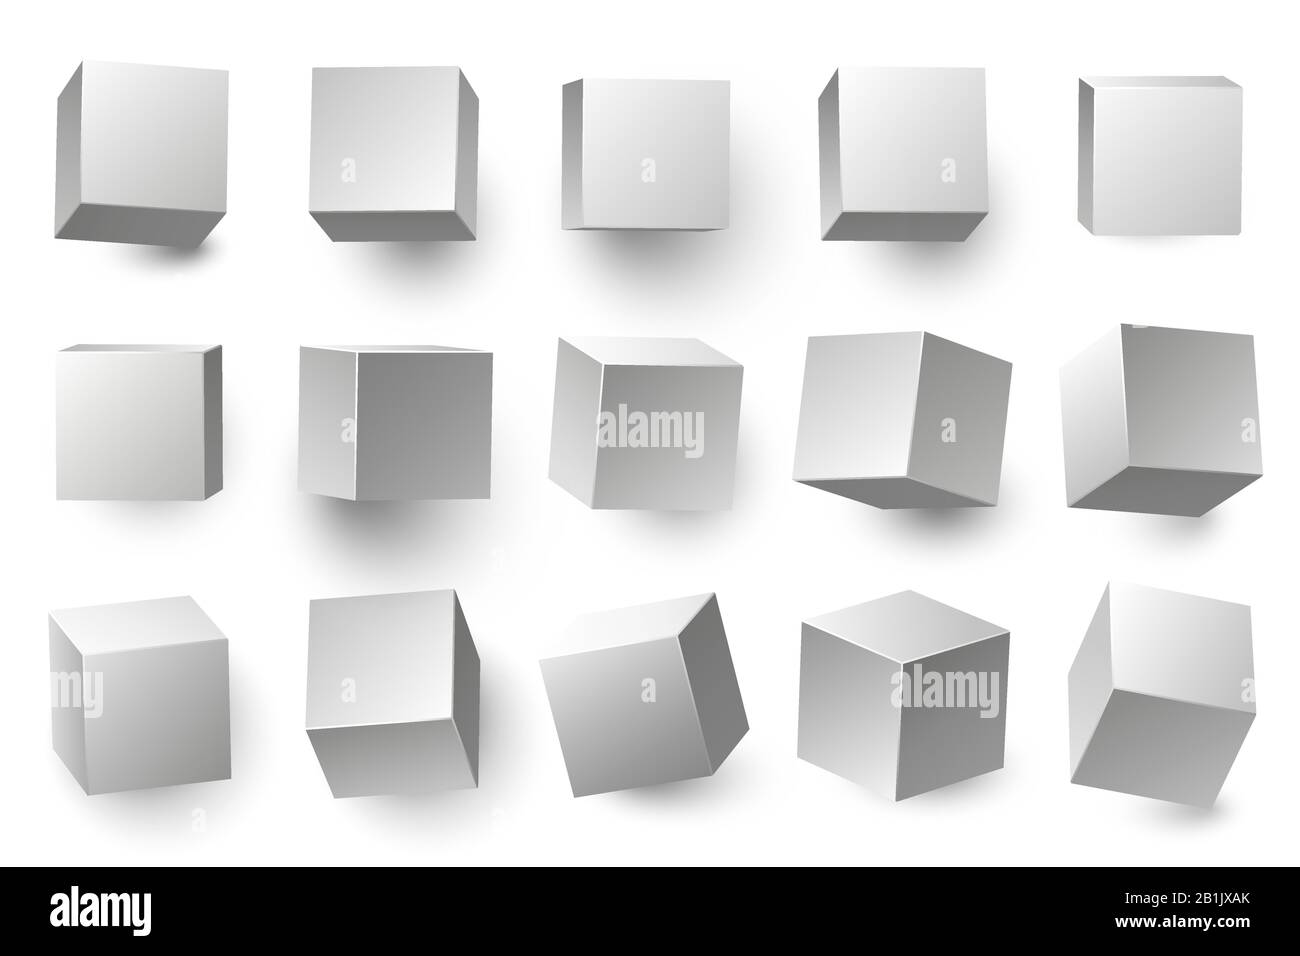 Realistische 3D-Würfel in Weiß. Minimale Würfelform mit verschiedenen perspektivischen, geometrischen Rahmen formt Vektorgrafiken Stock Vektor